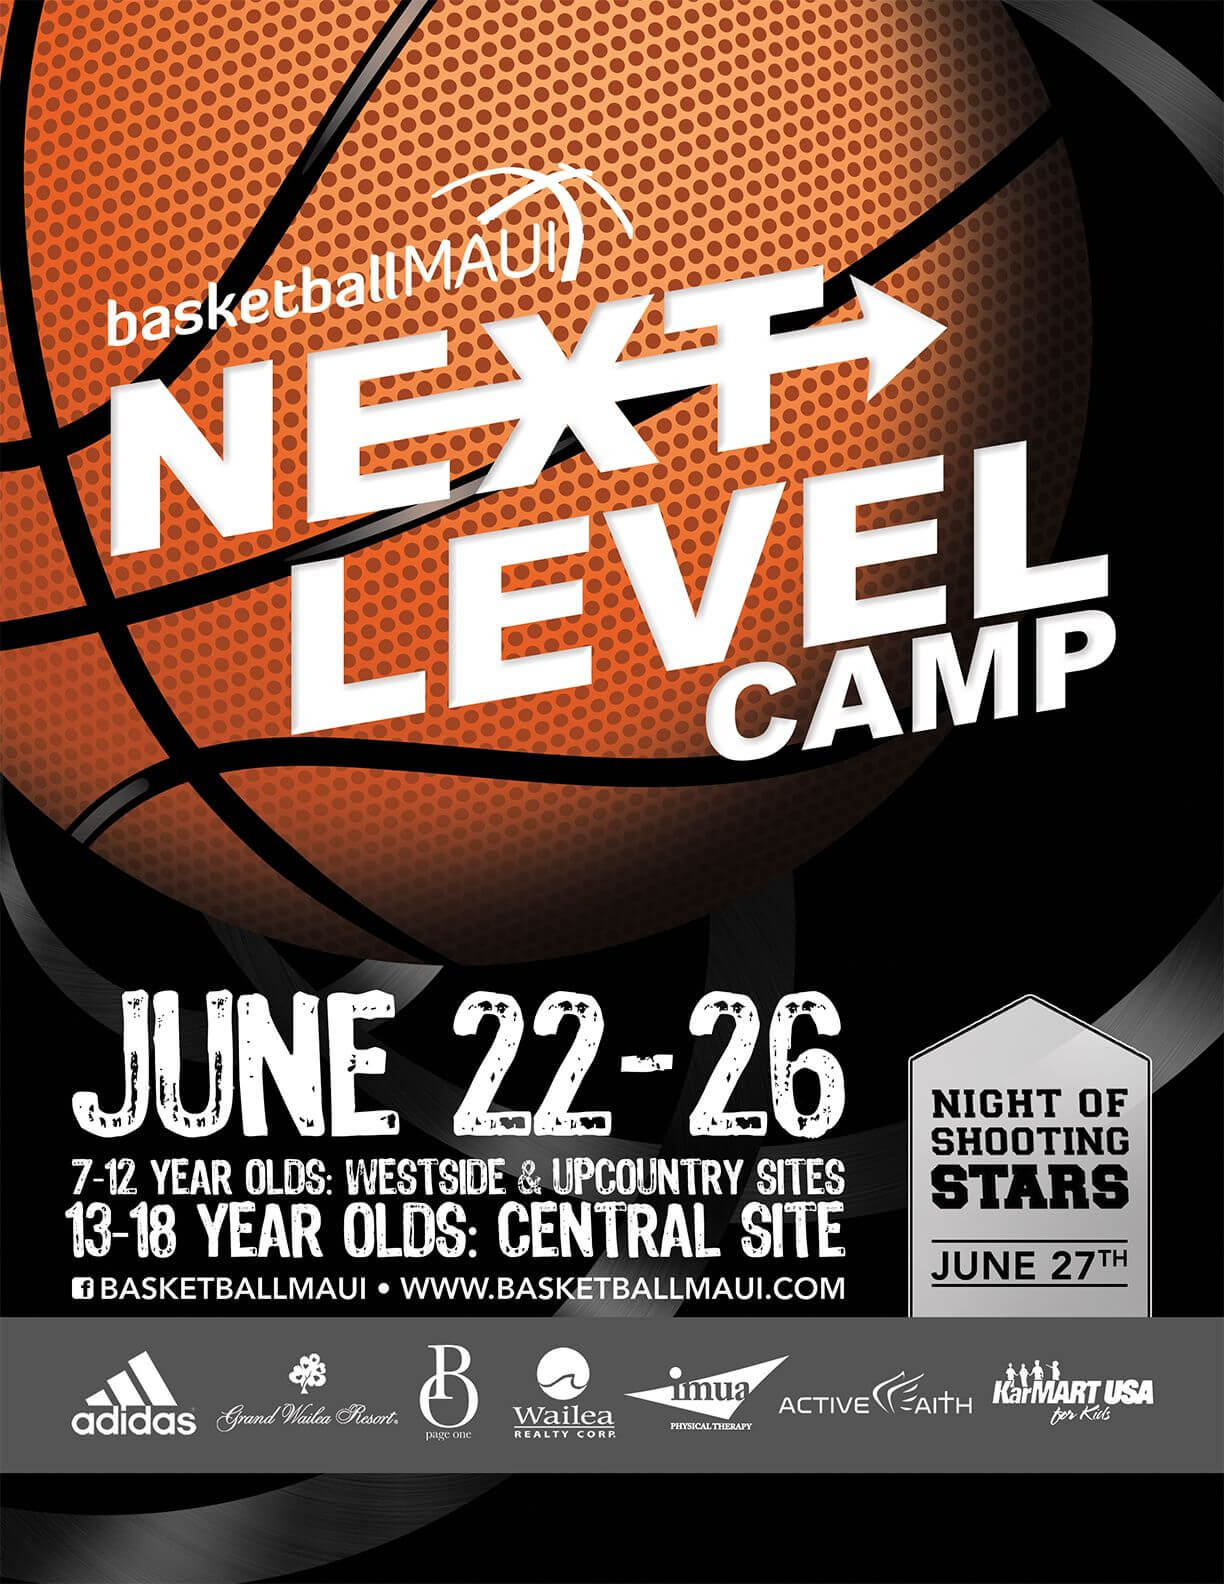 Flyer Design For Kids Basketball Camp. Designed Intended For Basketball Camp Brochure Template